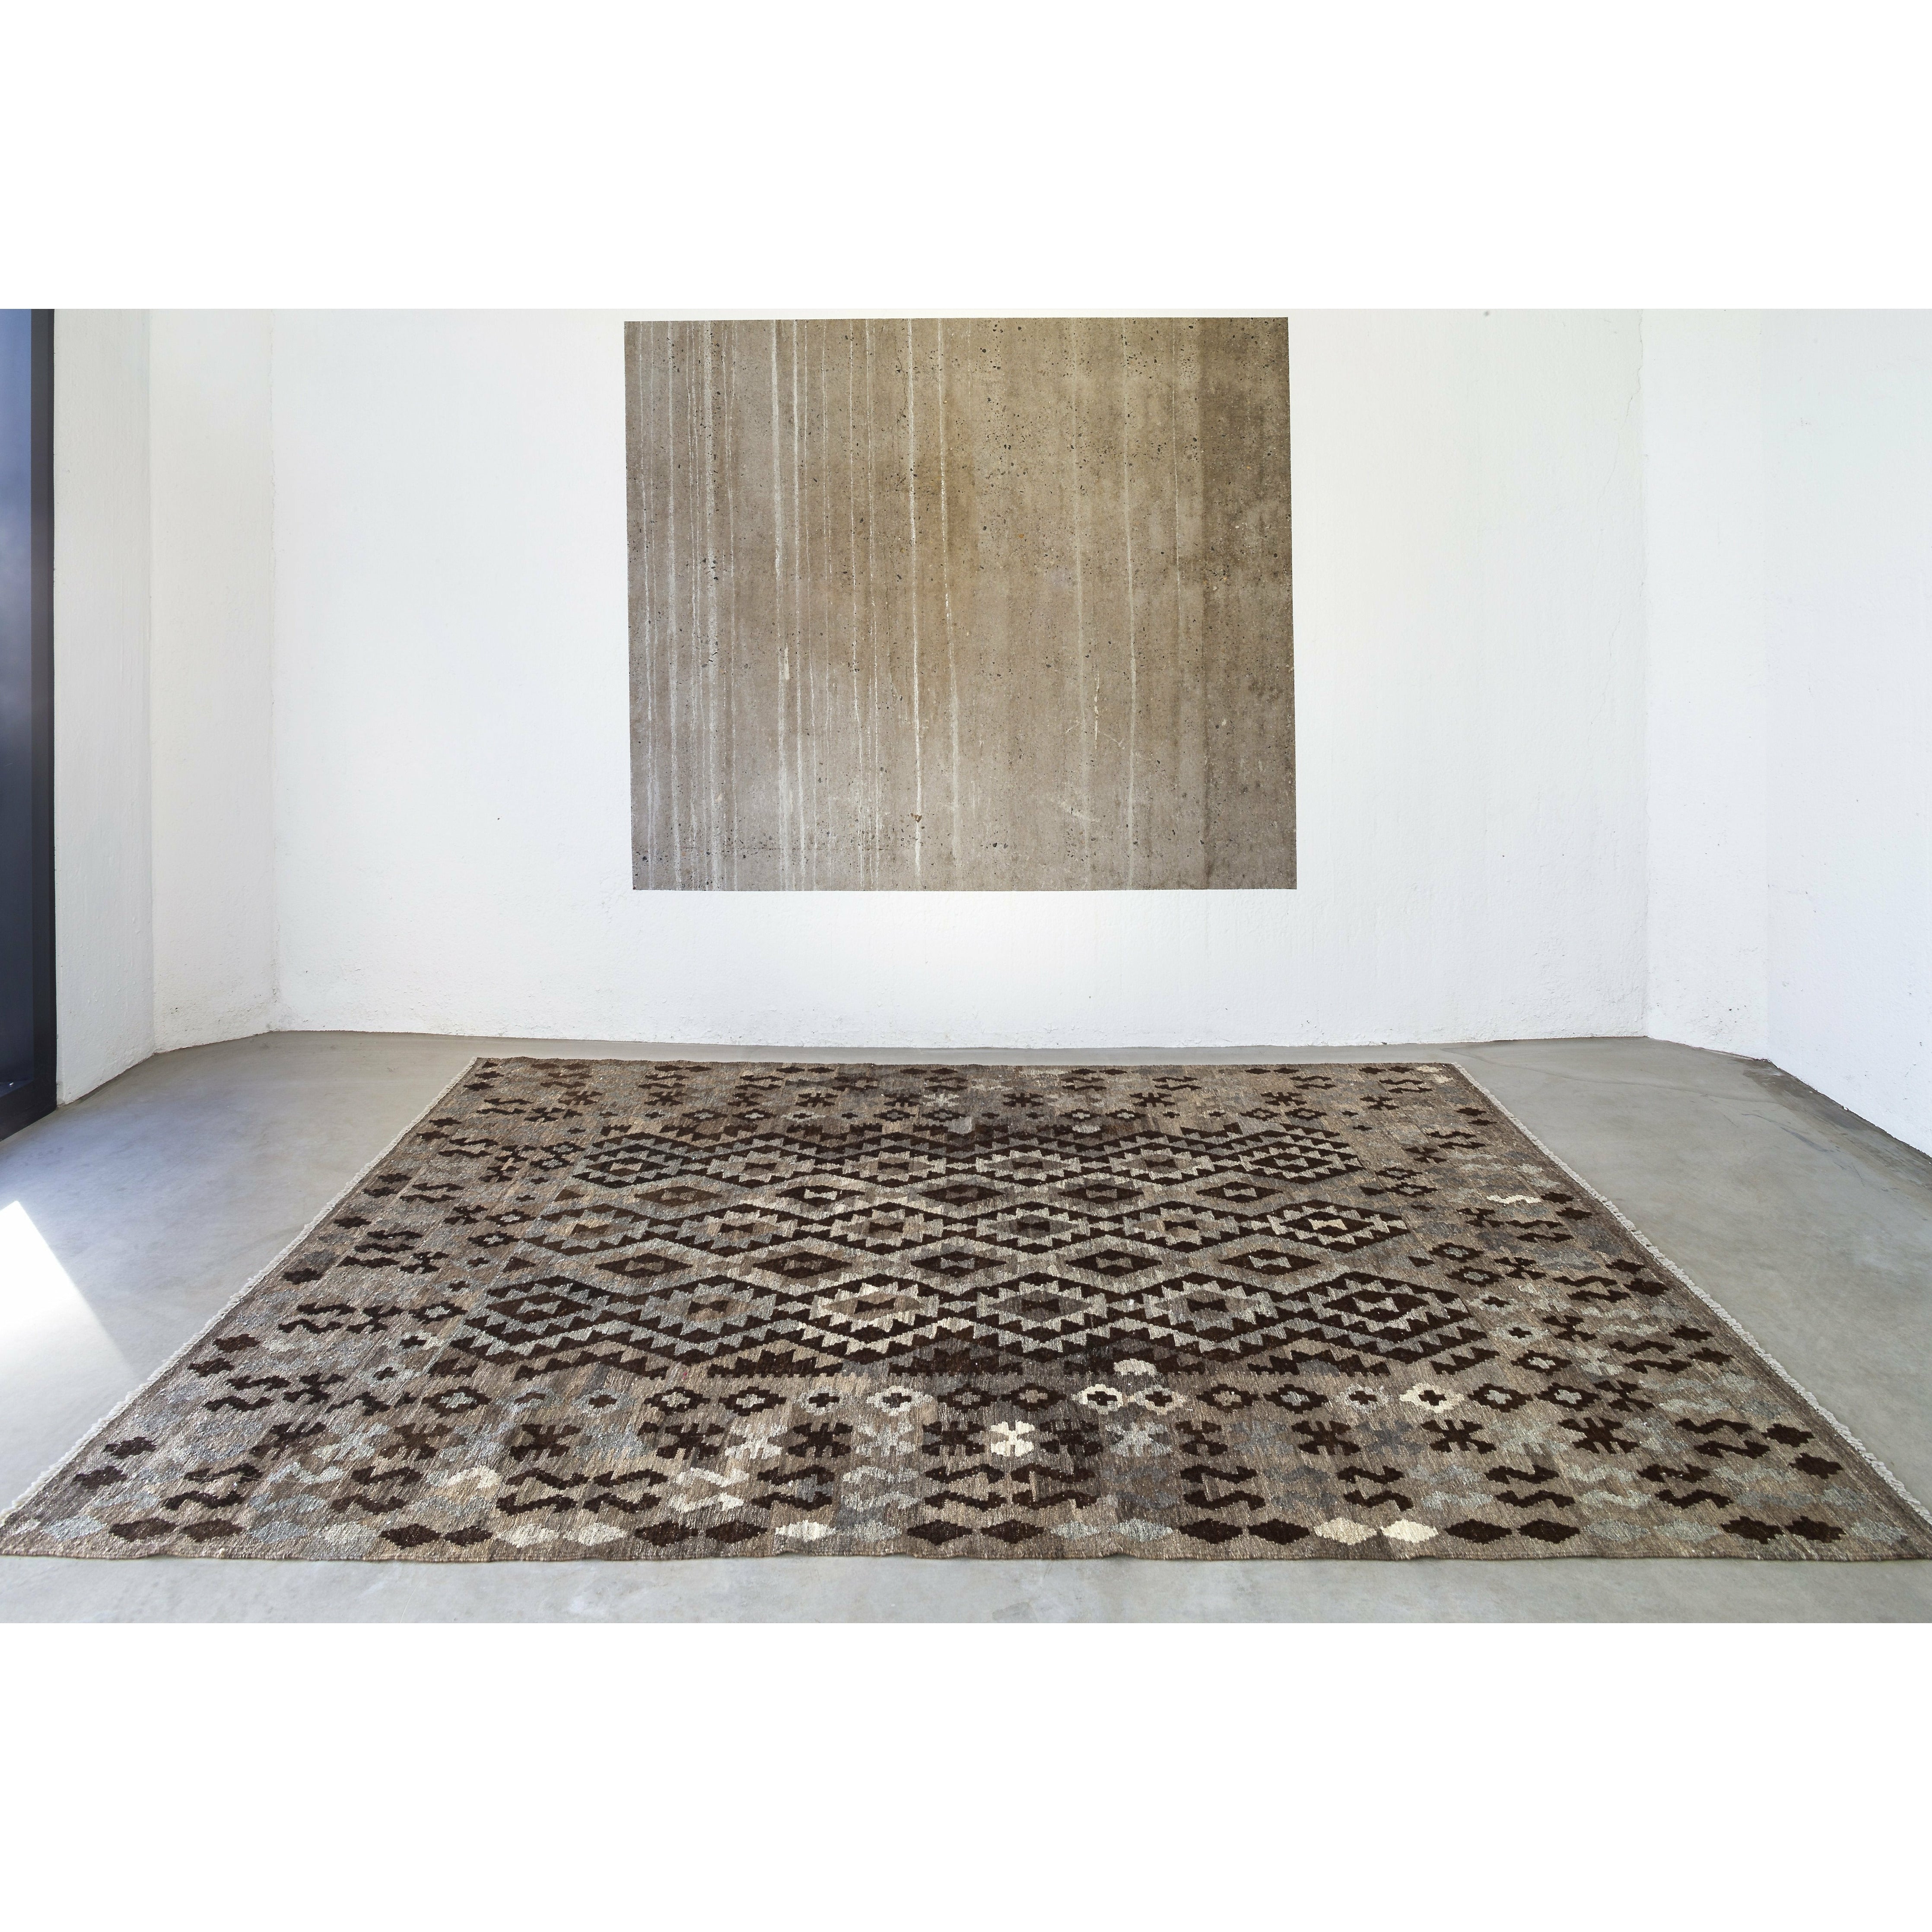 Massimo Kelim Rug Luonnollinen tummanharmaa/ruskea/musta, 150x200 cm